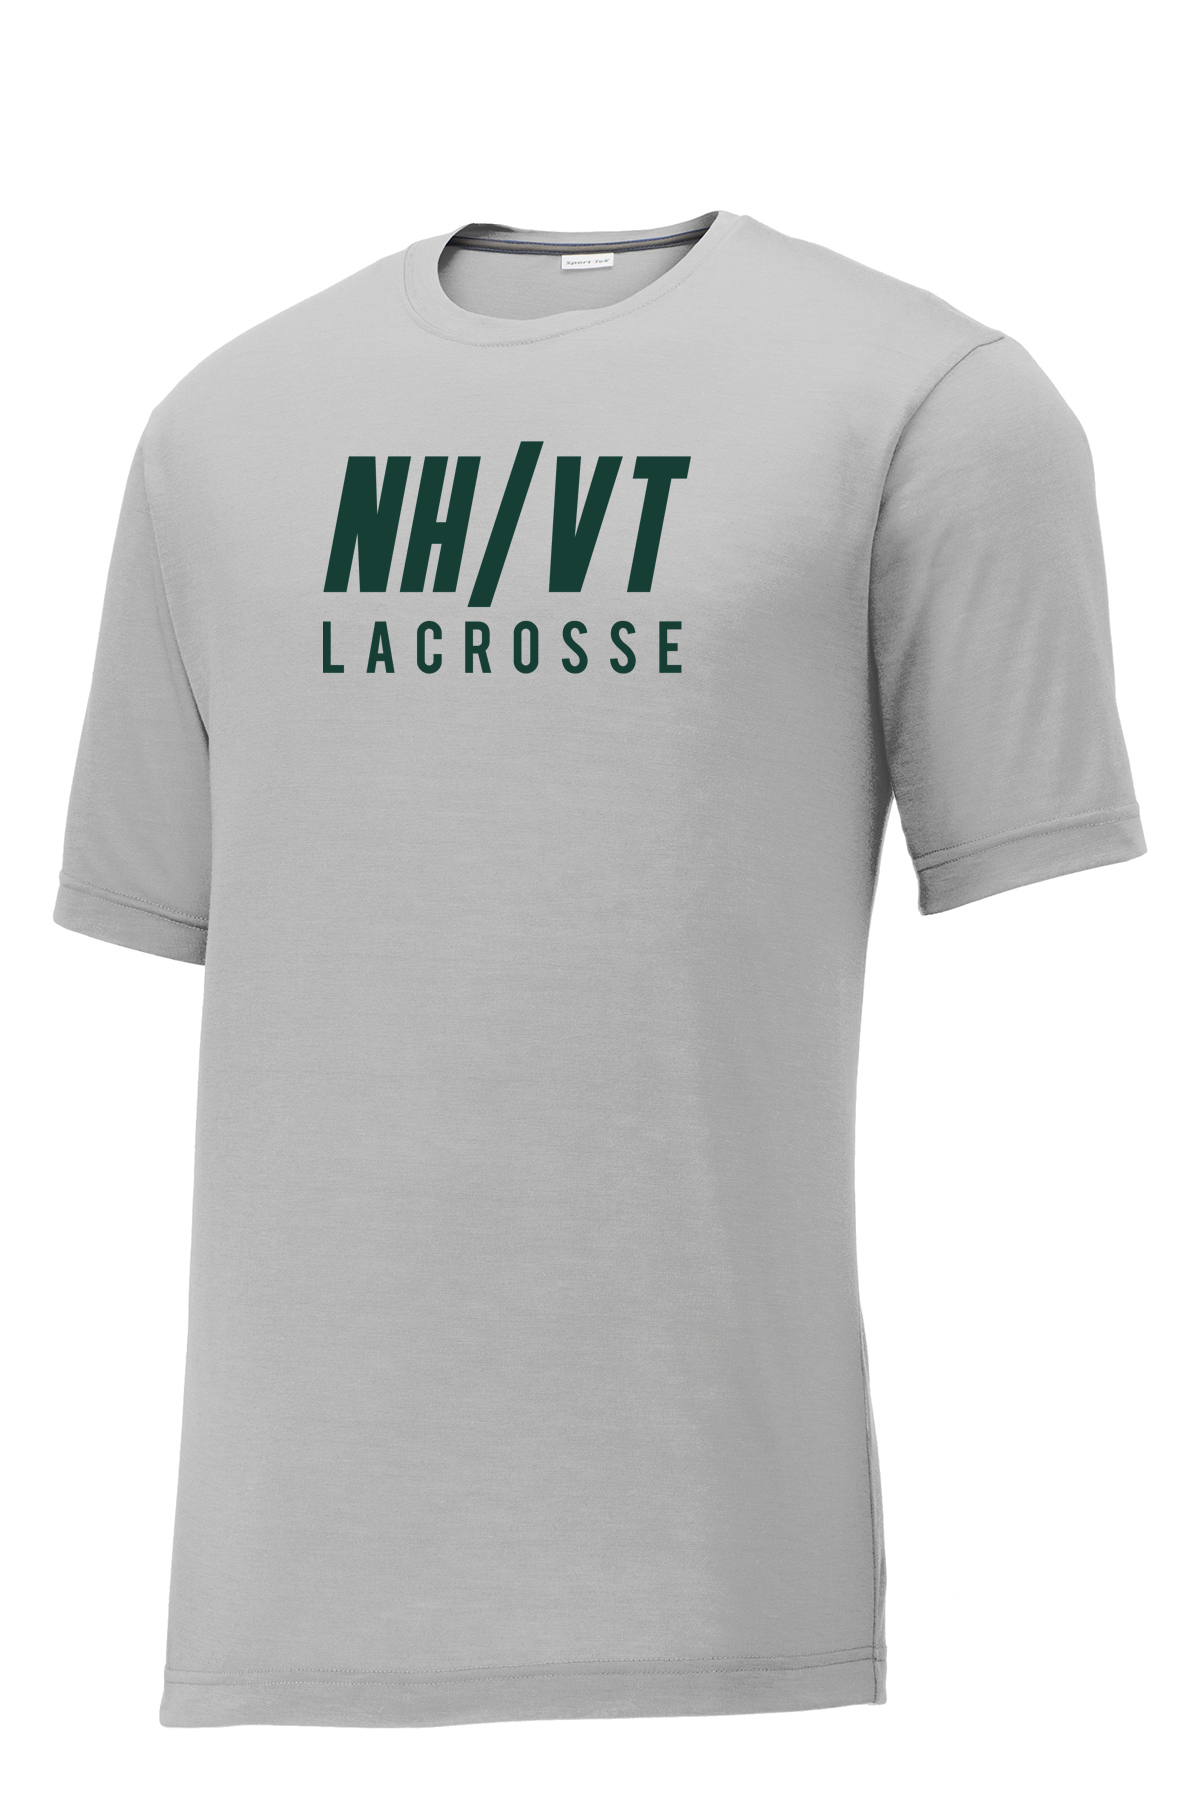 NH/VT Lacrosse CottonTouch Performance T-Shirt